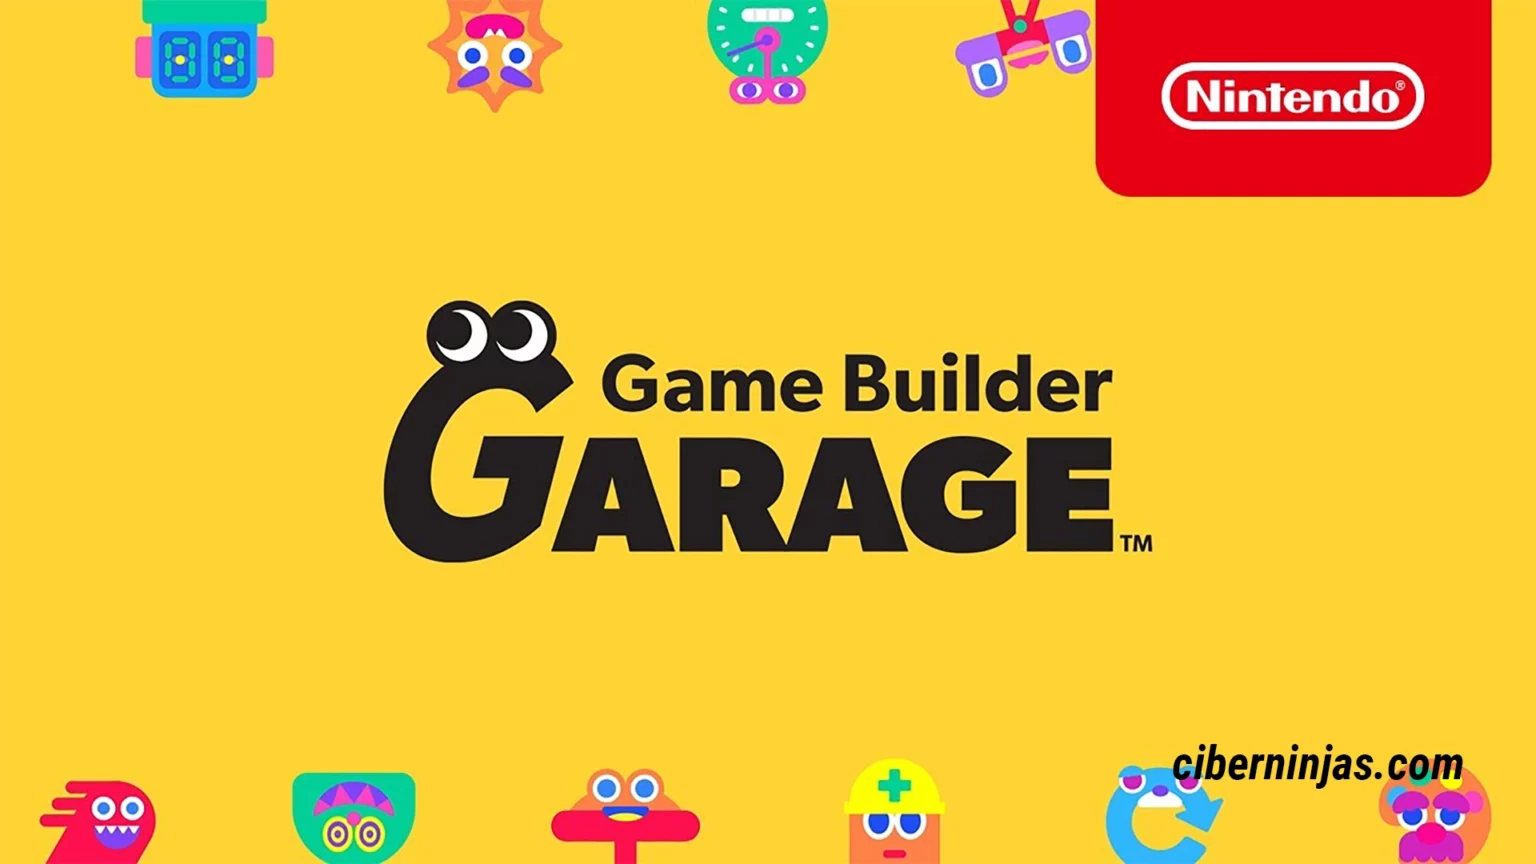 Game Builder Garage: El juego de Nintendo Switch enfocado hacía los futuros creadores de videojuegos